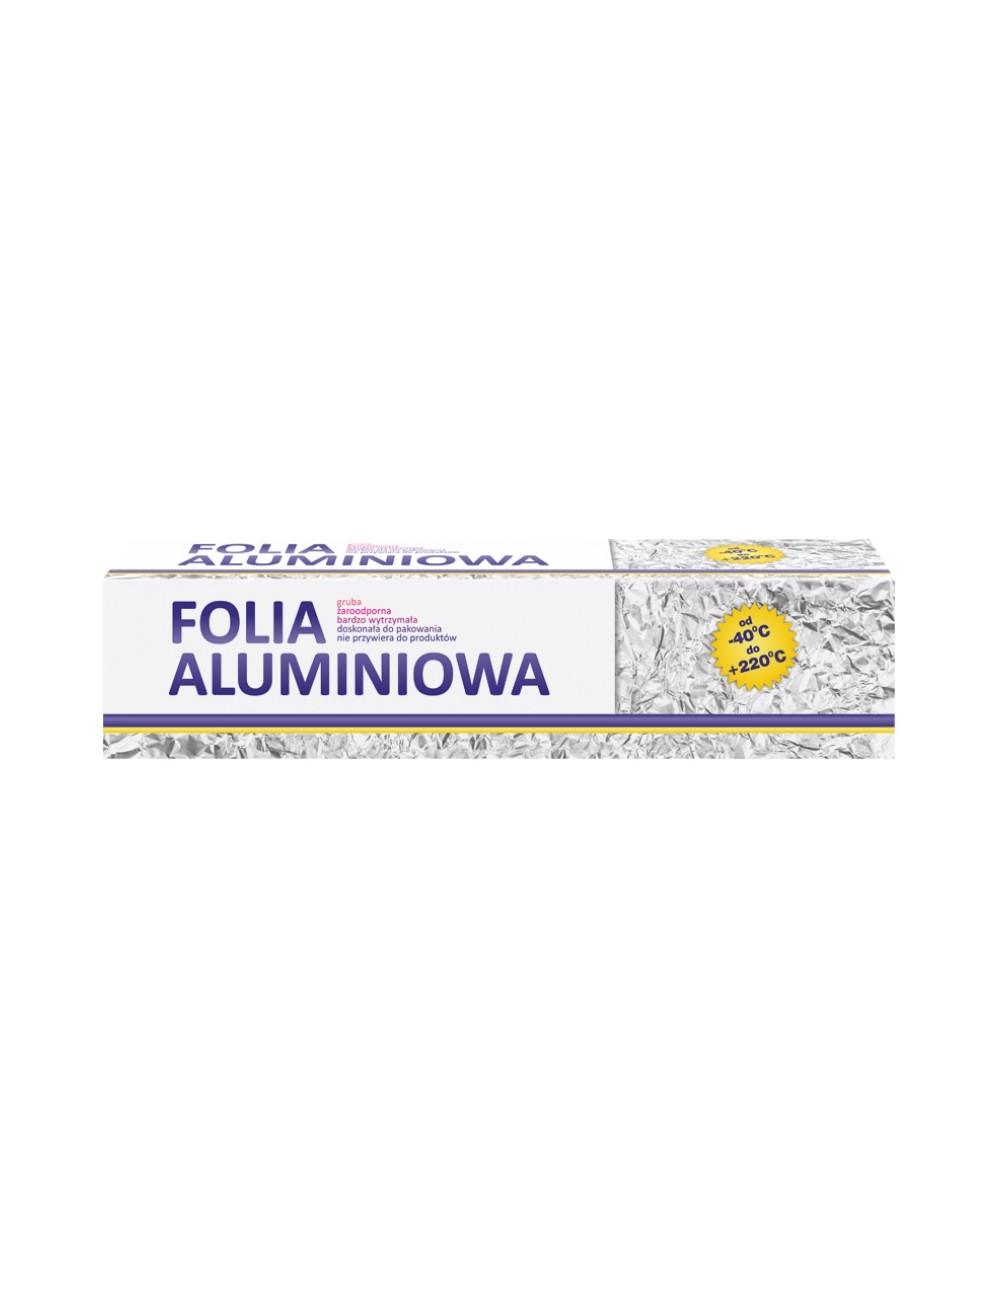 Clarina Folia Aluminiowa Gastronomiczna 760g (29cm szer.) – żaroodporna, nie przywiera